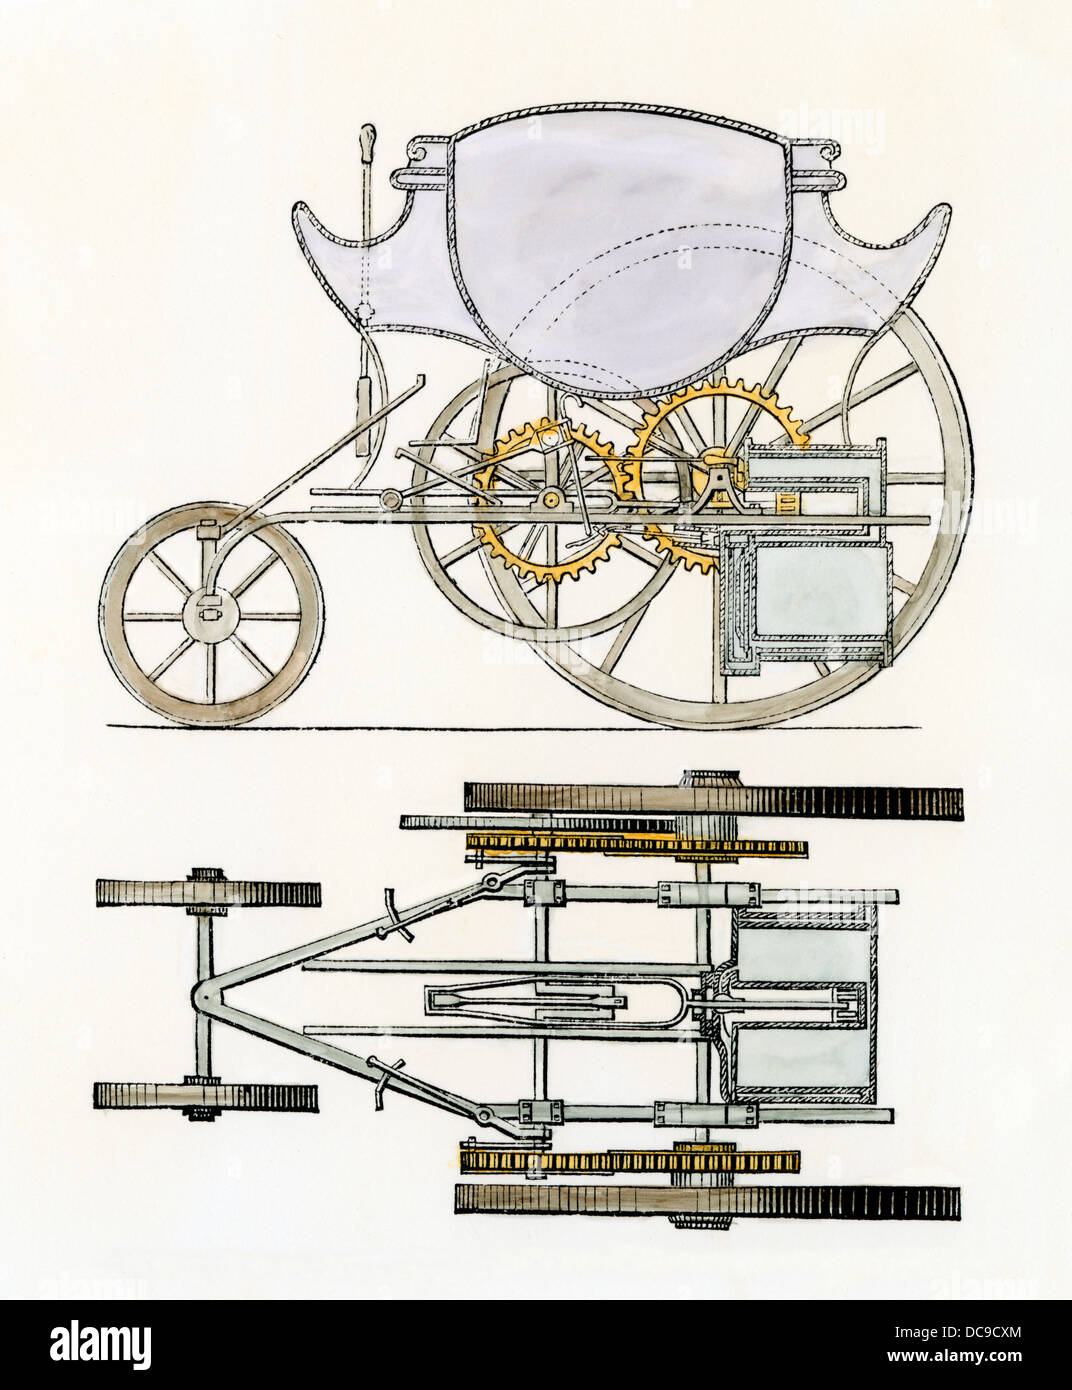 Trevethick & Vivian's plan for a steam locomotive "Merthyr-Tydvil Stock